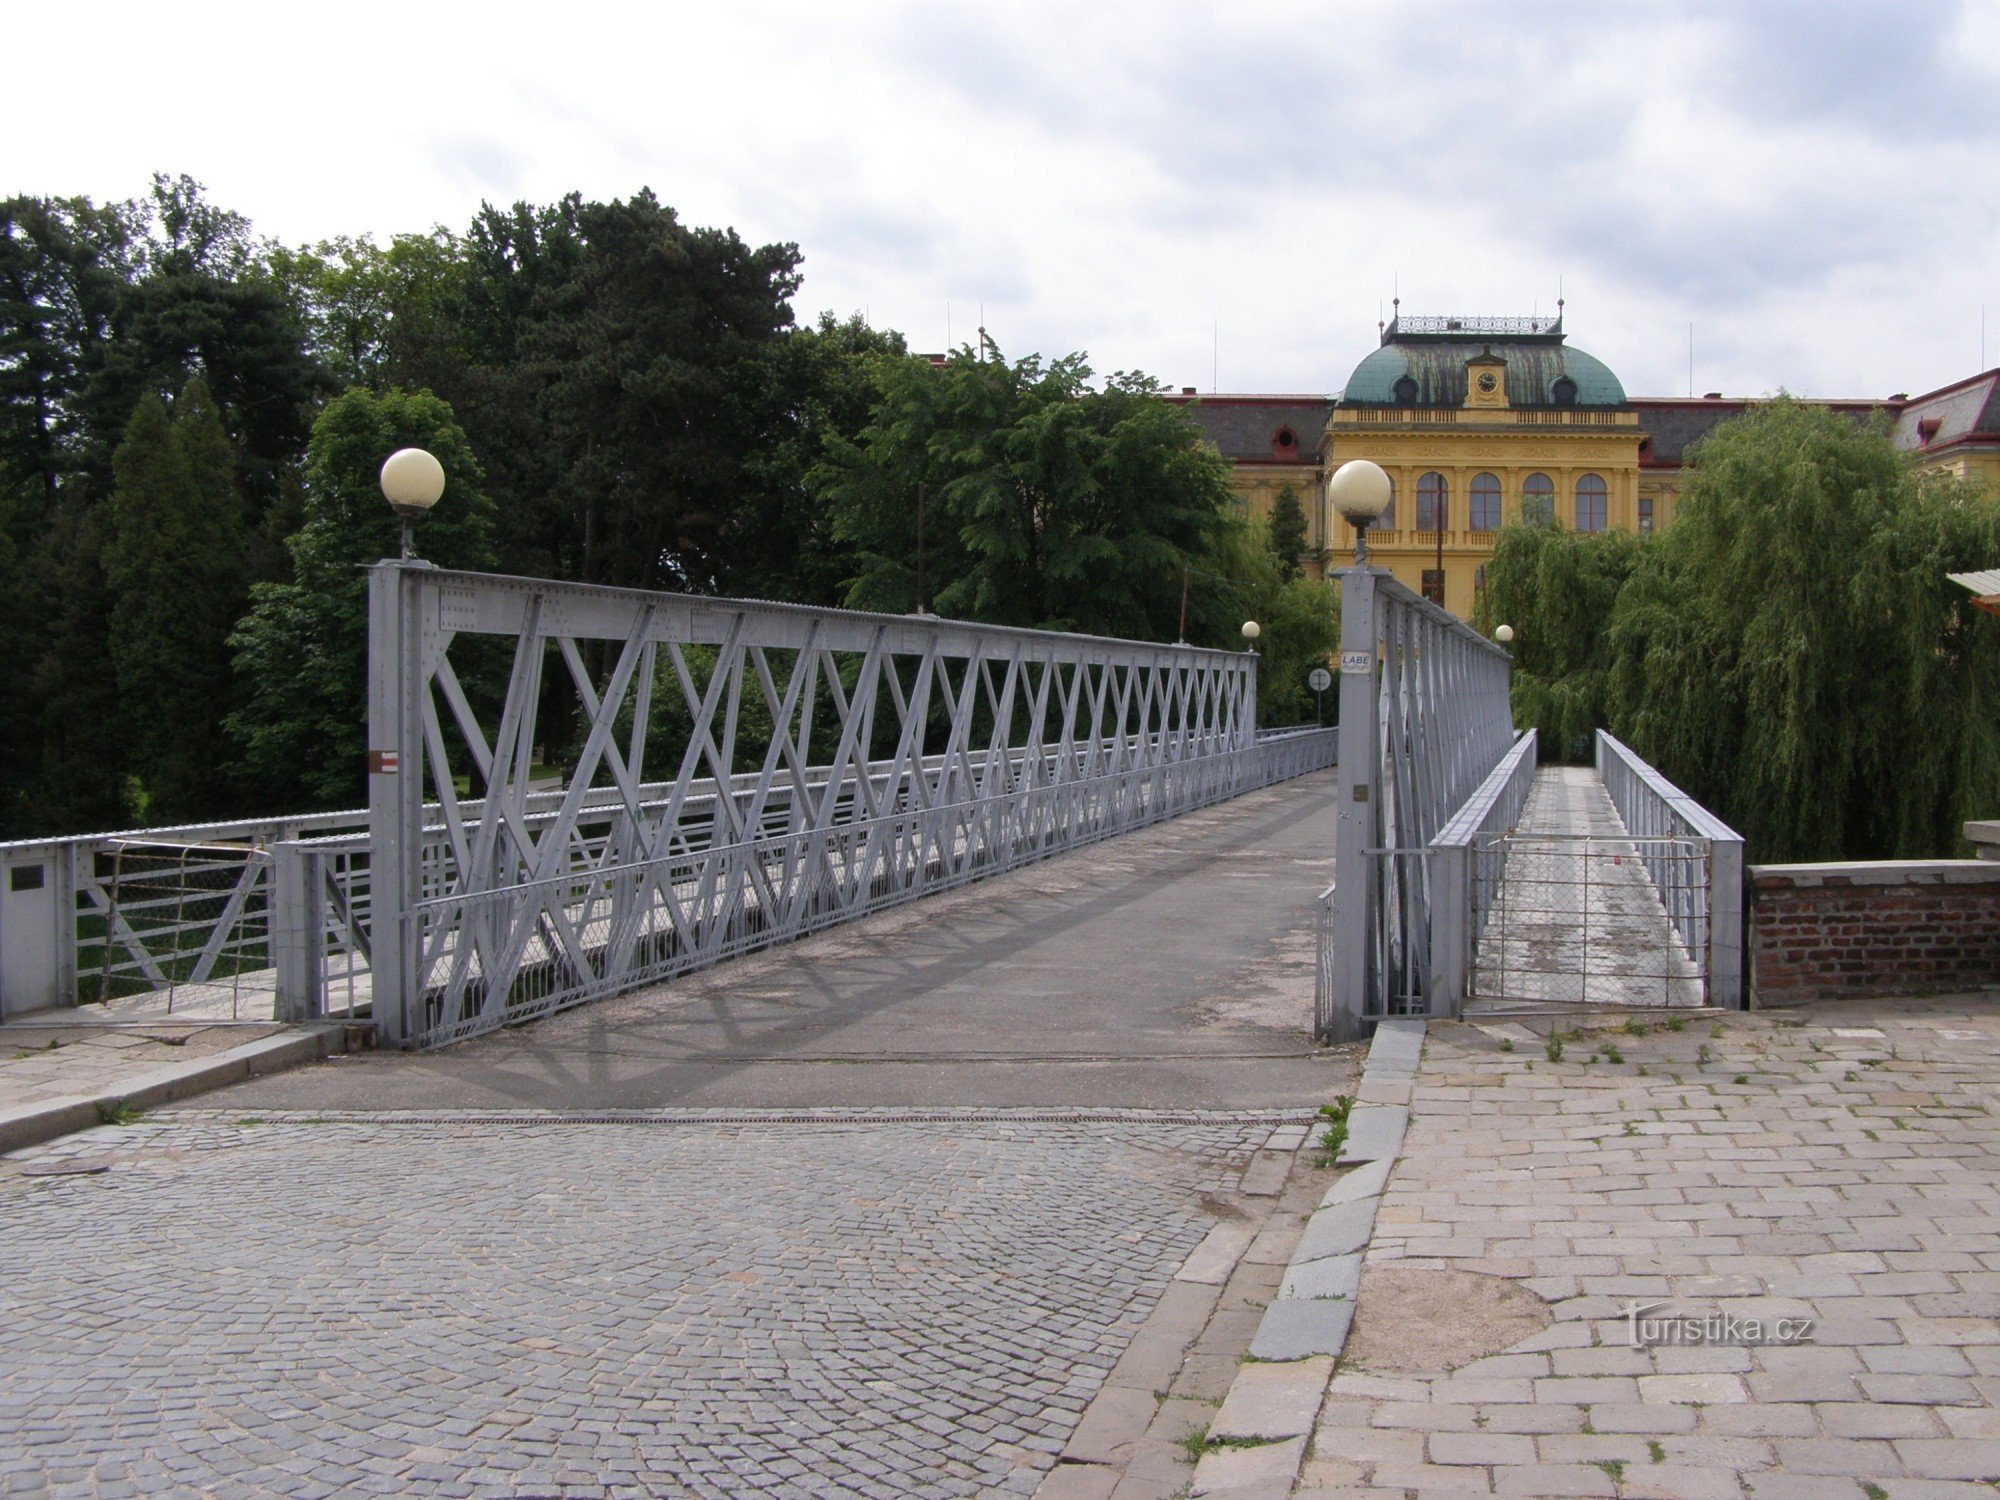 Jaroměř - pont de fer sur l'Elbe